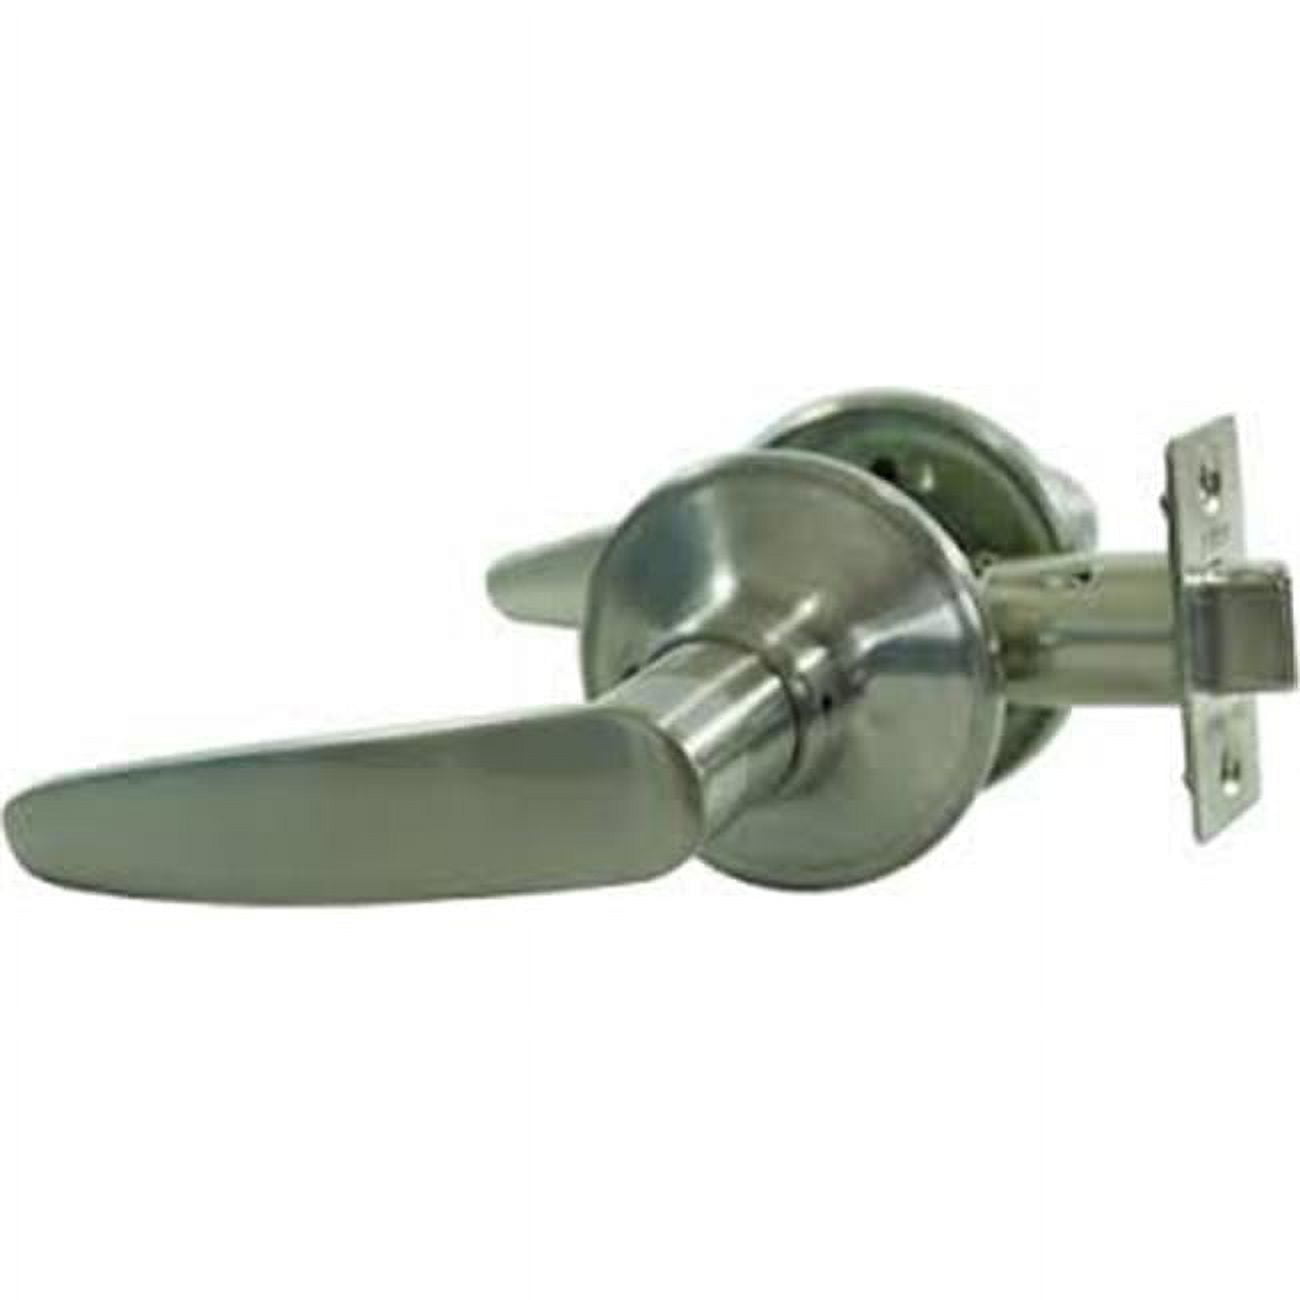 Weiser Lock Satin Nickel Fairfax Smart Key Entrance and Deadbolt